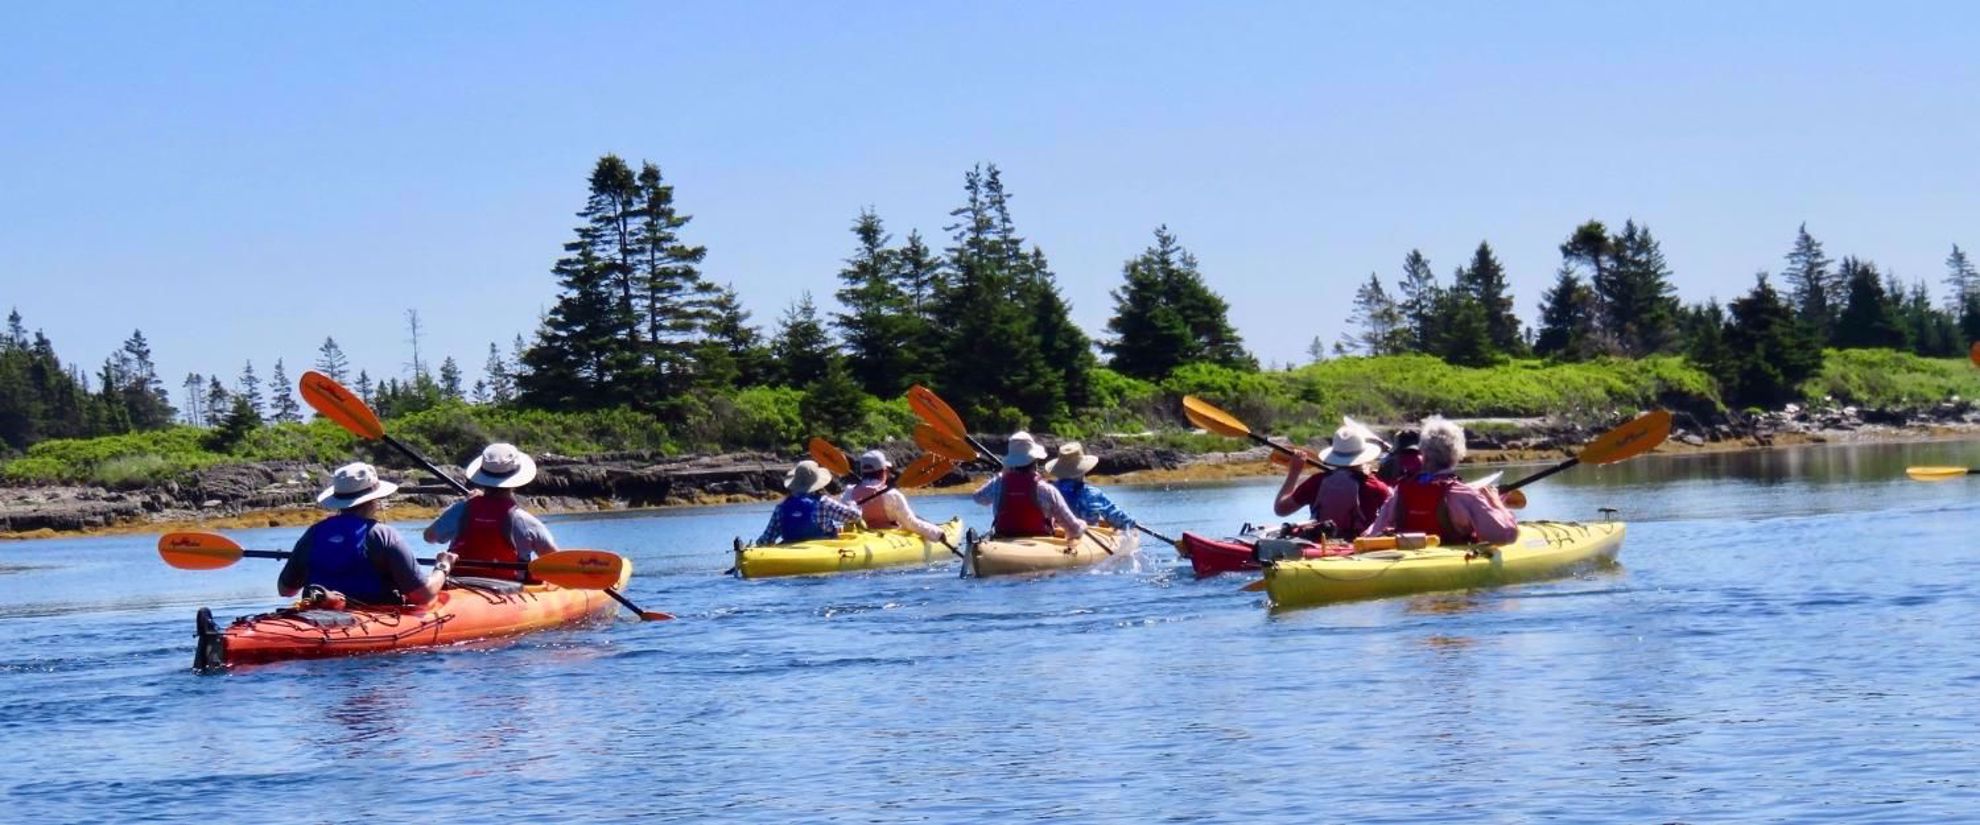 kayaking on a women's adventure tour